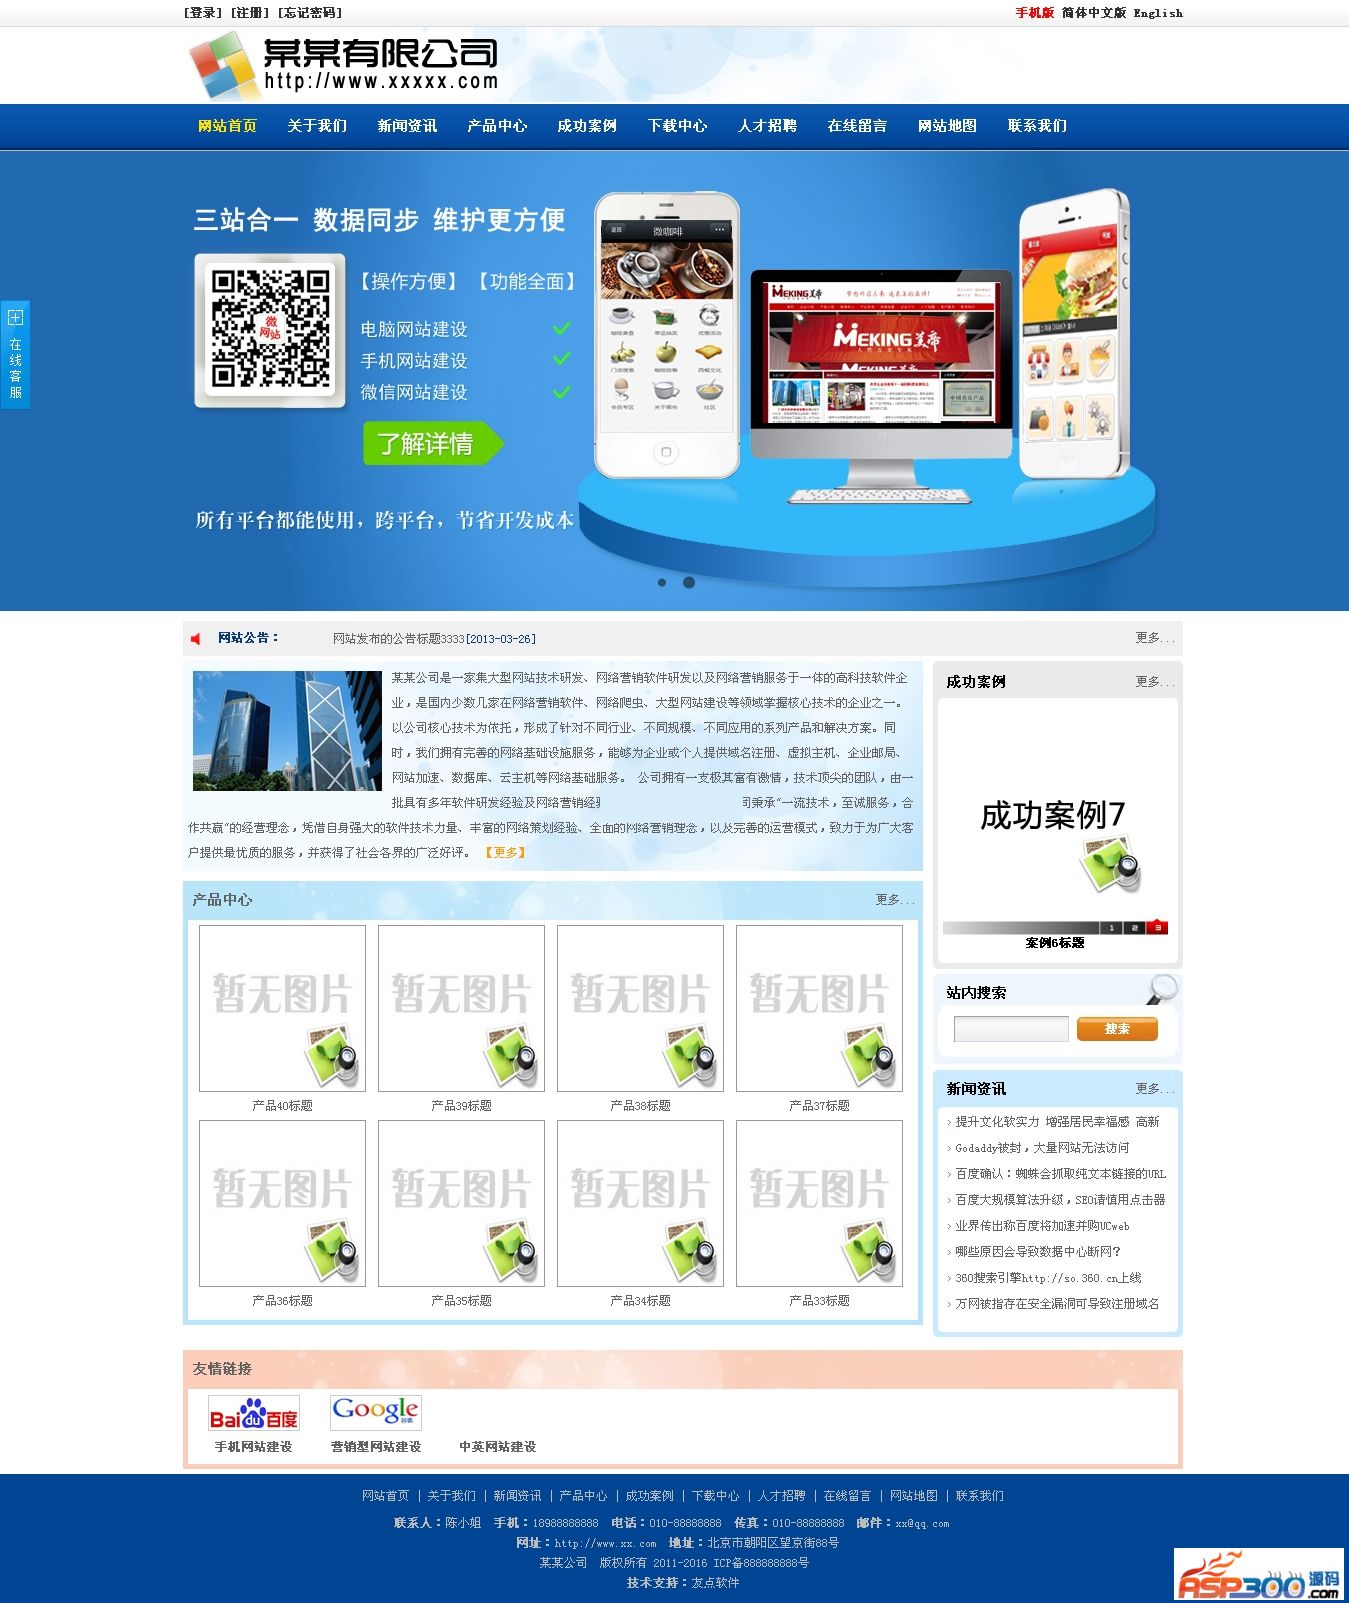 【首发】友点企业网站管理系统 7.4.4